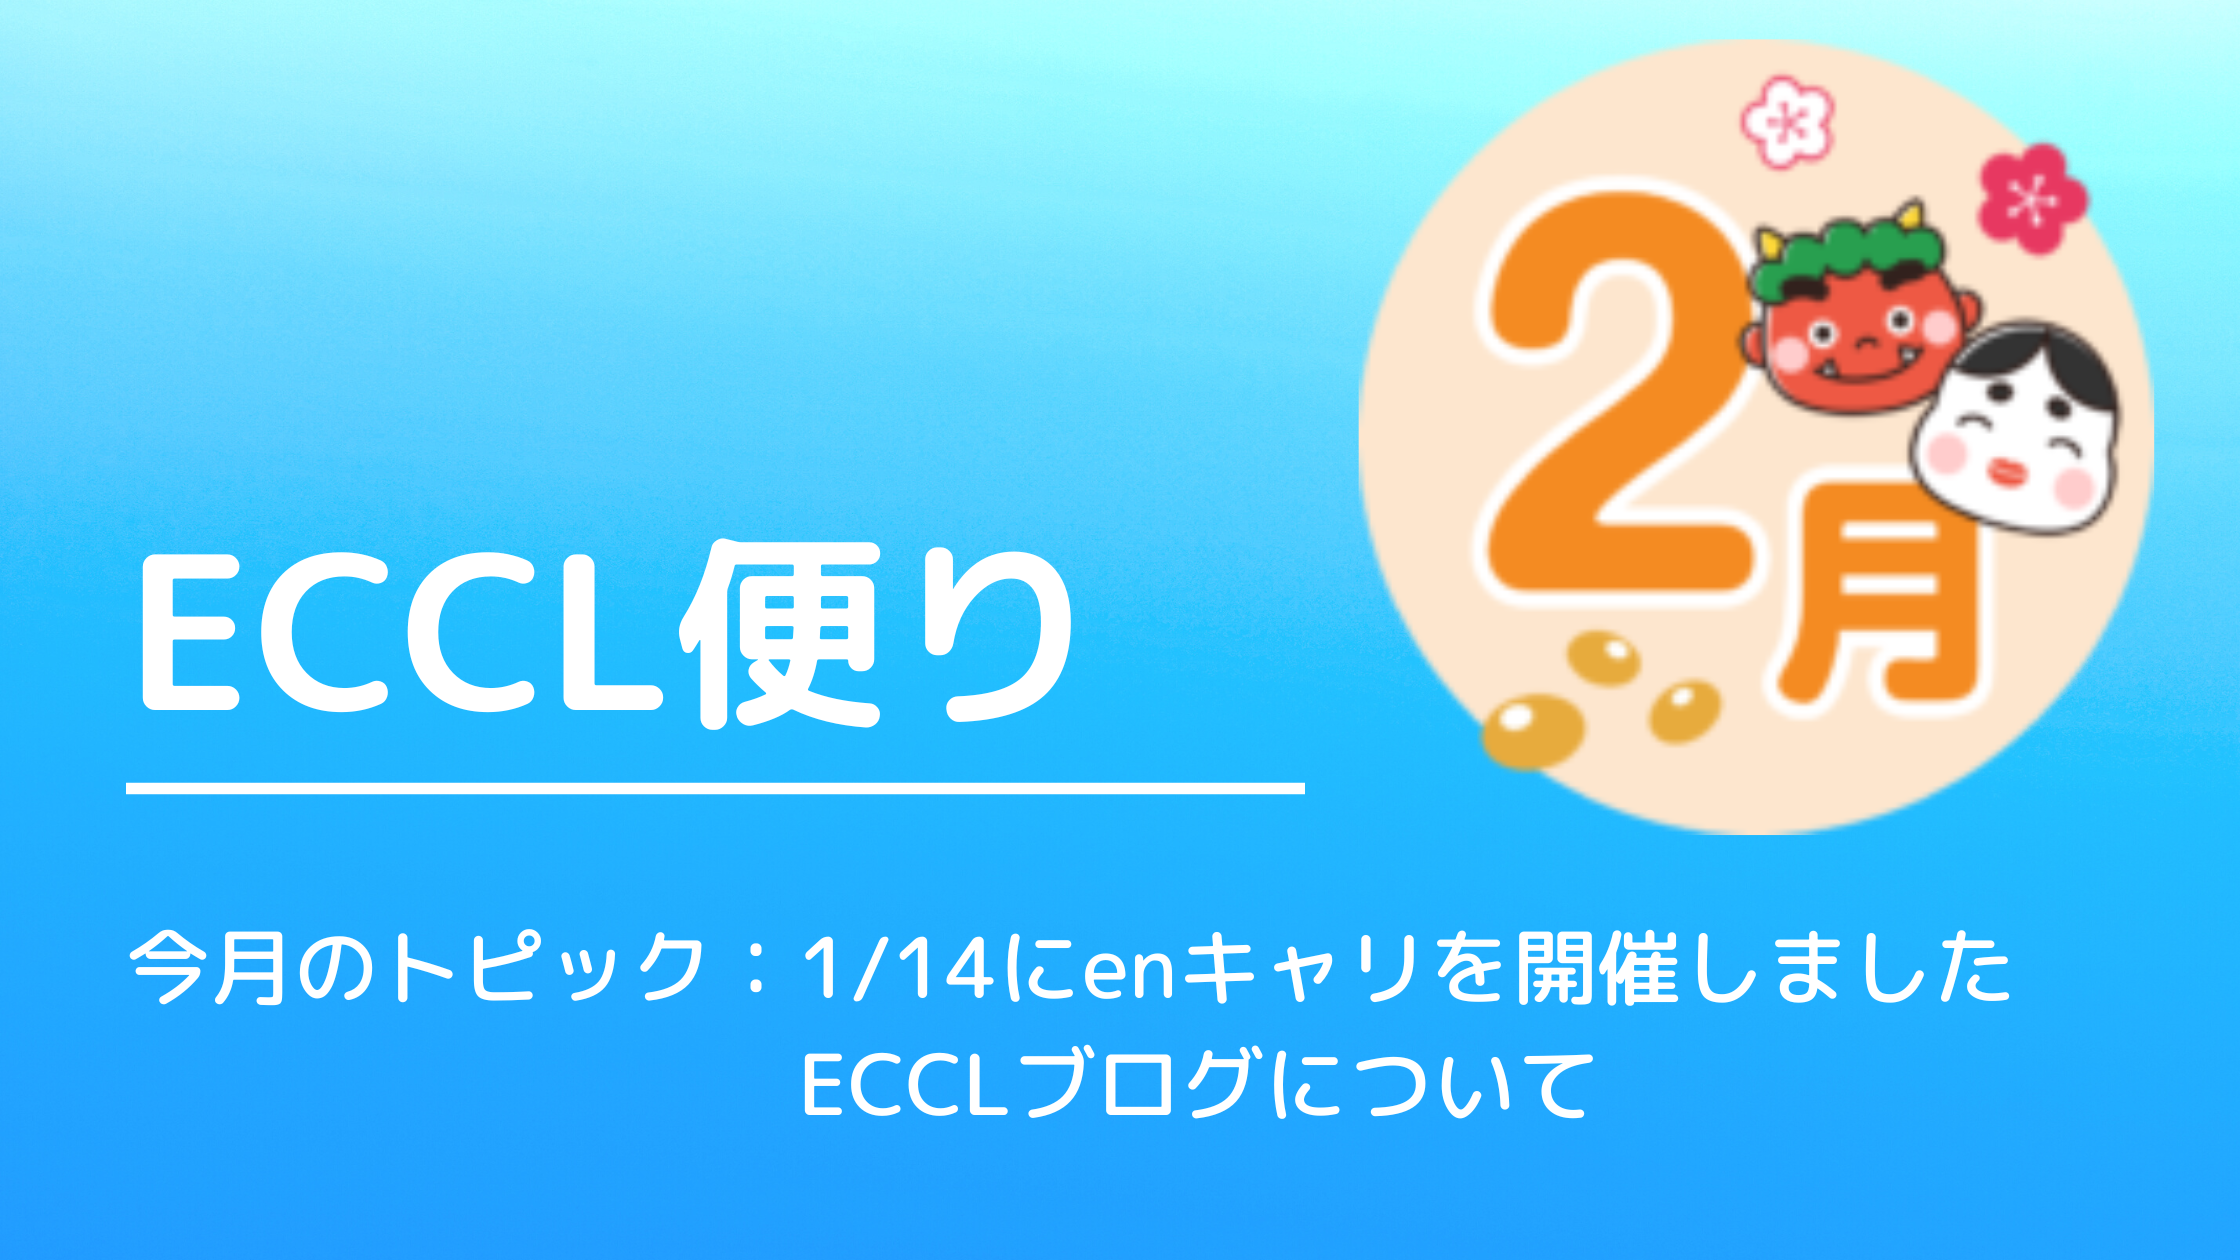 ECCL便り3月号♪